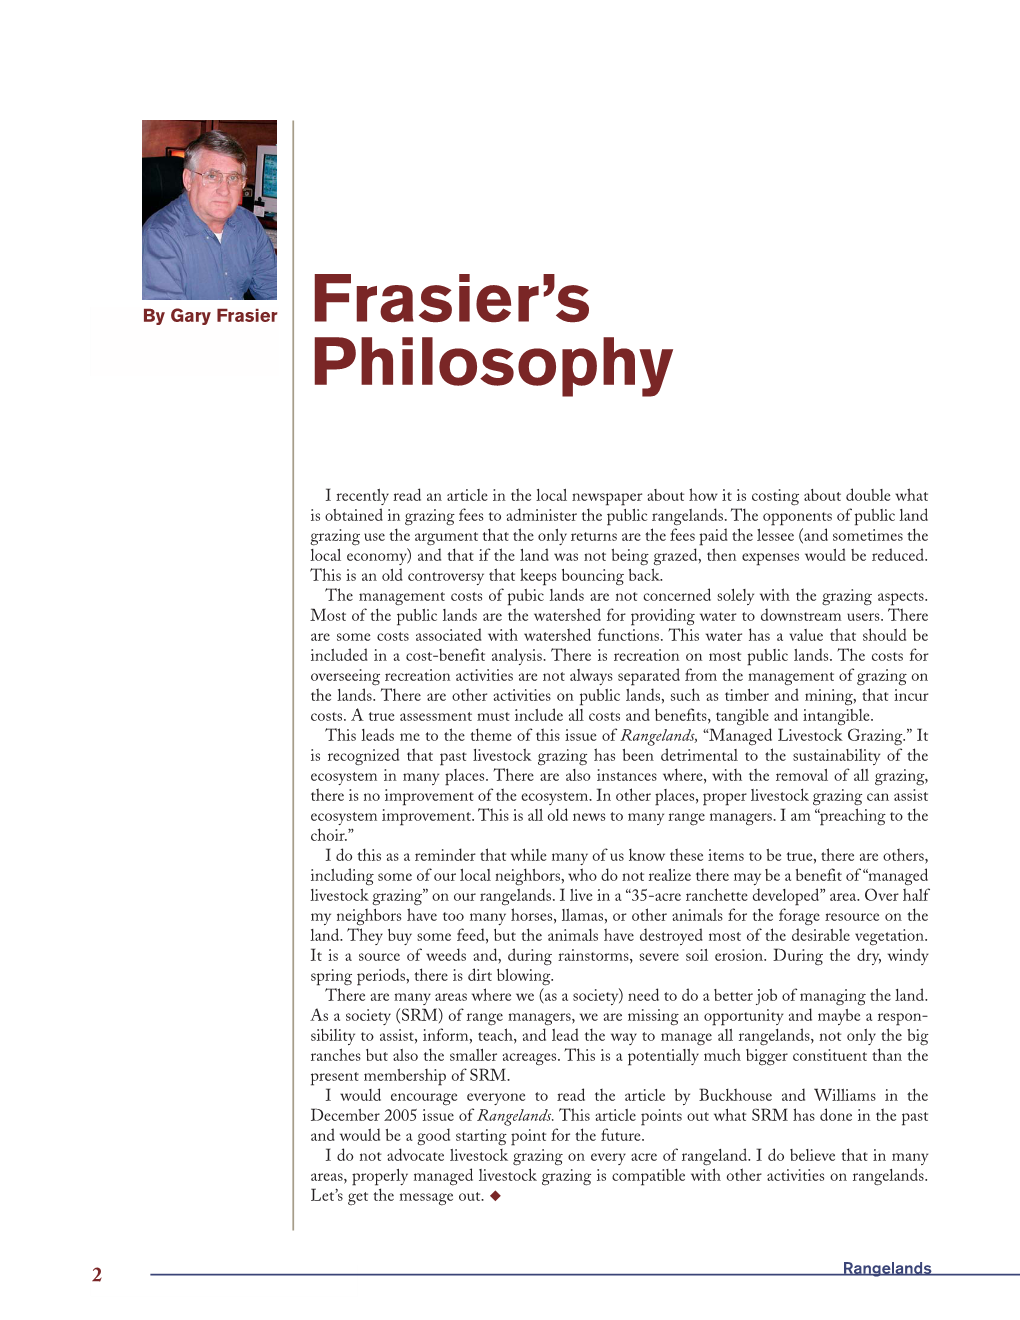 Frasier's Philosophy